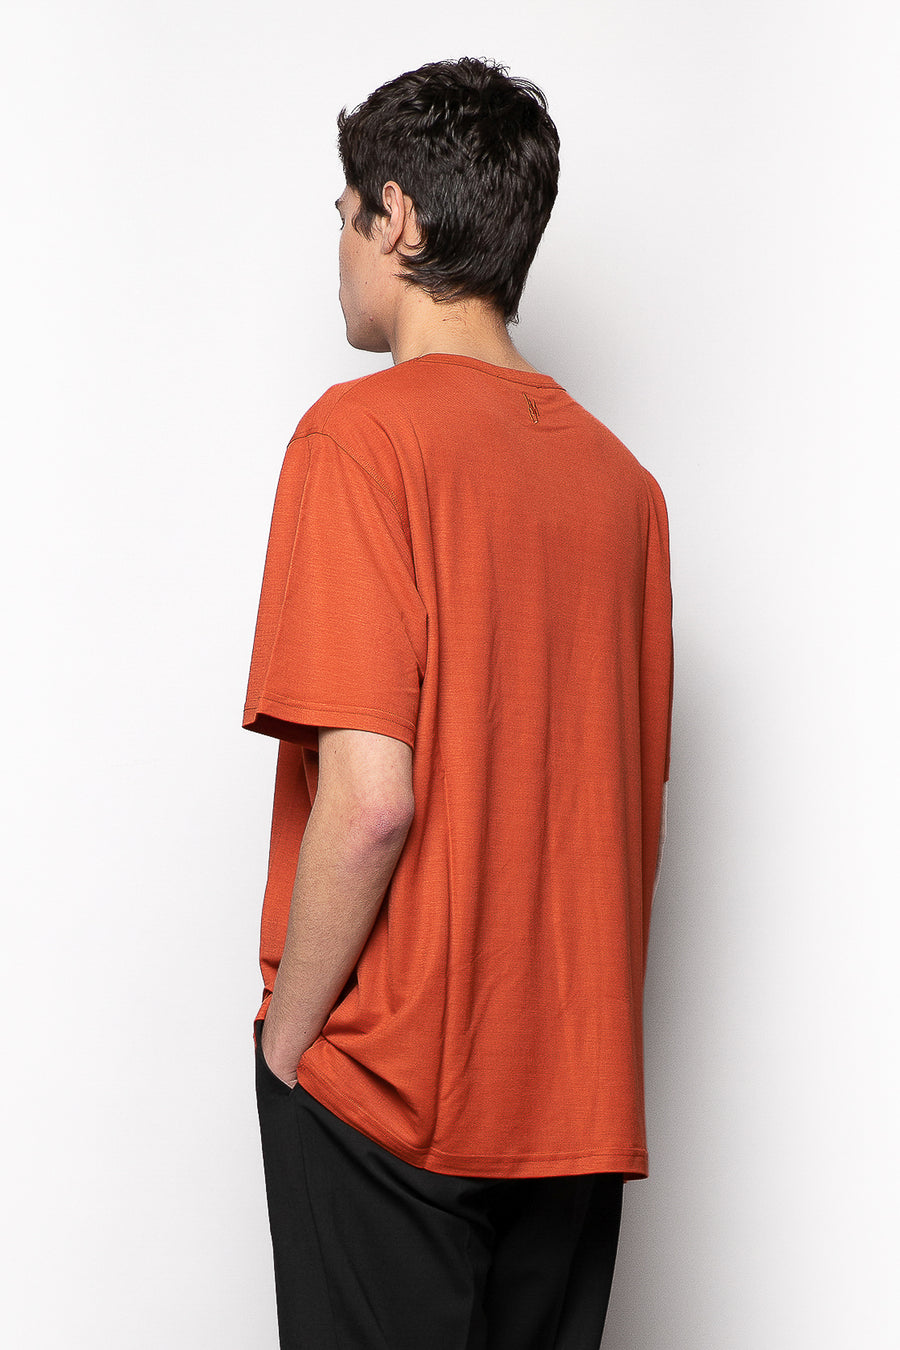 T-shirt in tessuto rayon lucido stretch con ricamo retro collo - Ruggine